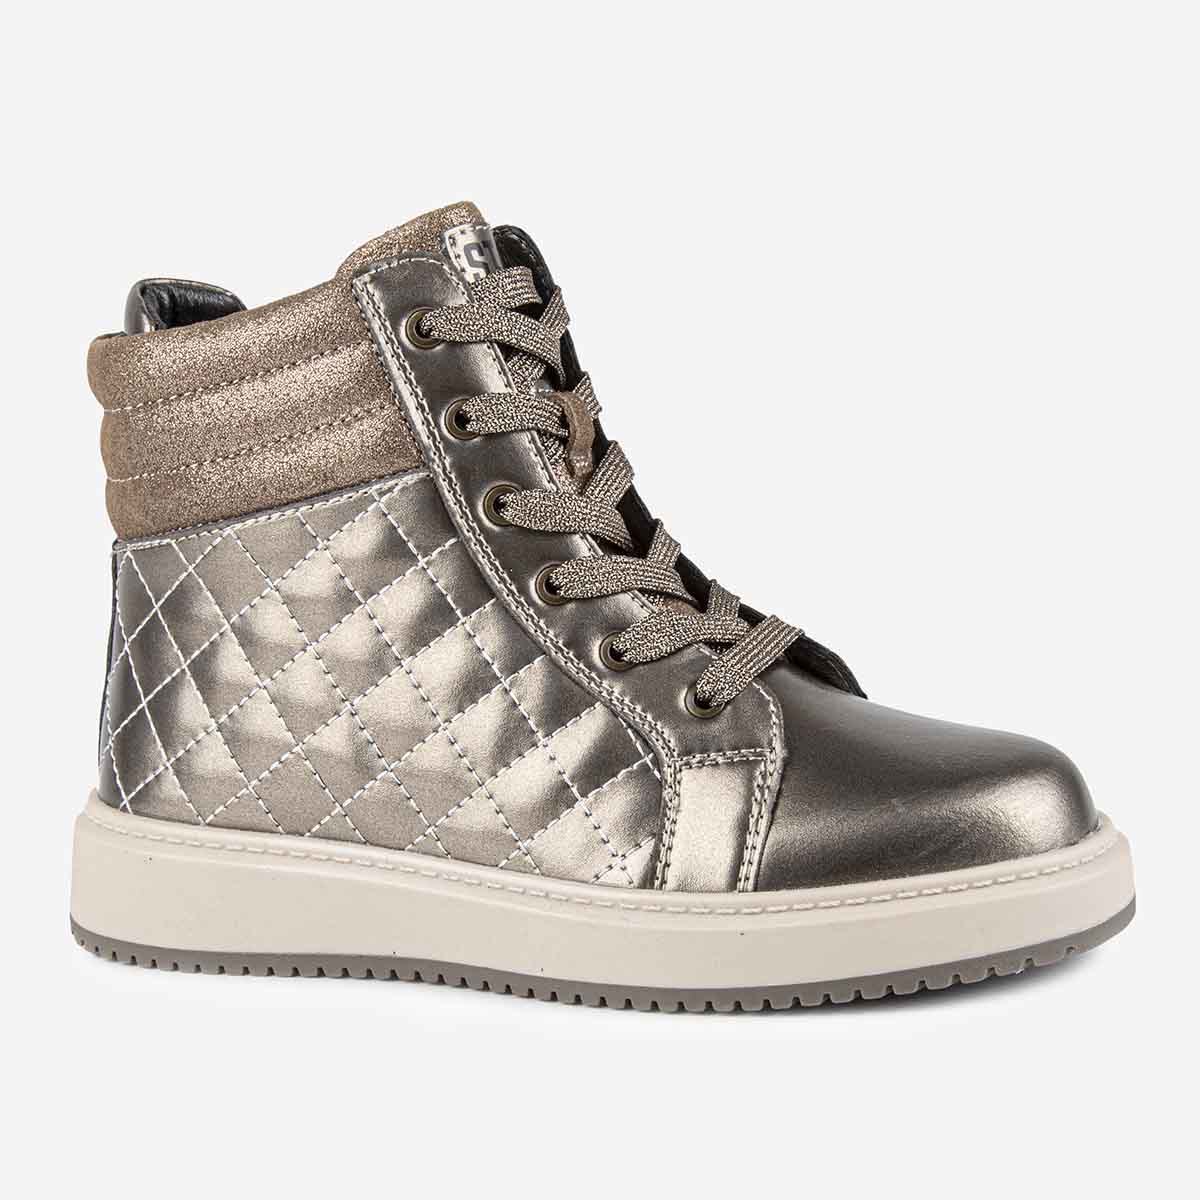 Ботинки Kapika 53638ук, цвет бронзовый, размер 30 сандалии туфли летние для девочек котофей 322107 25 бронзовый р 27